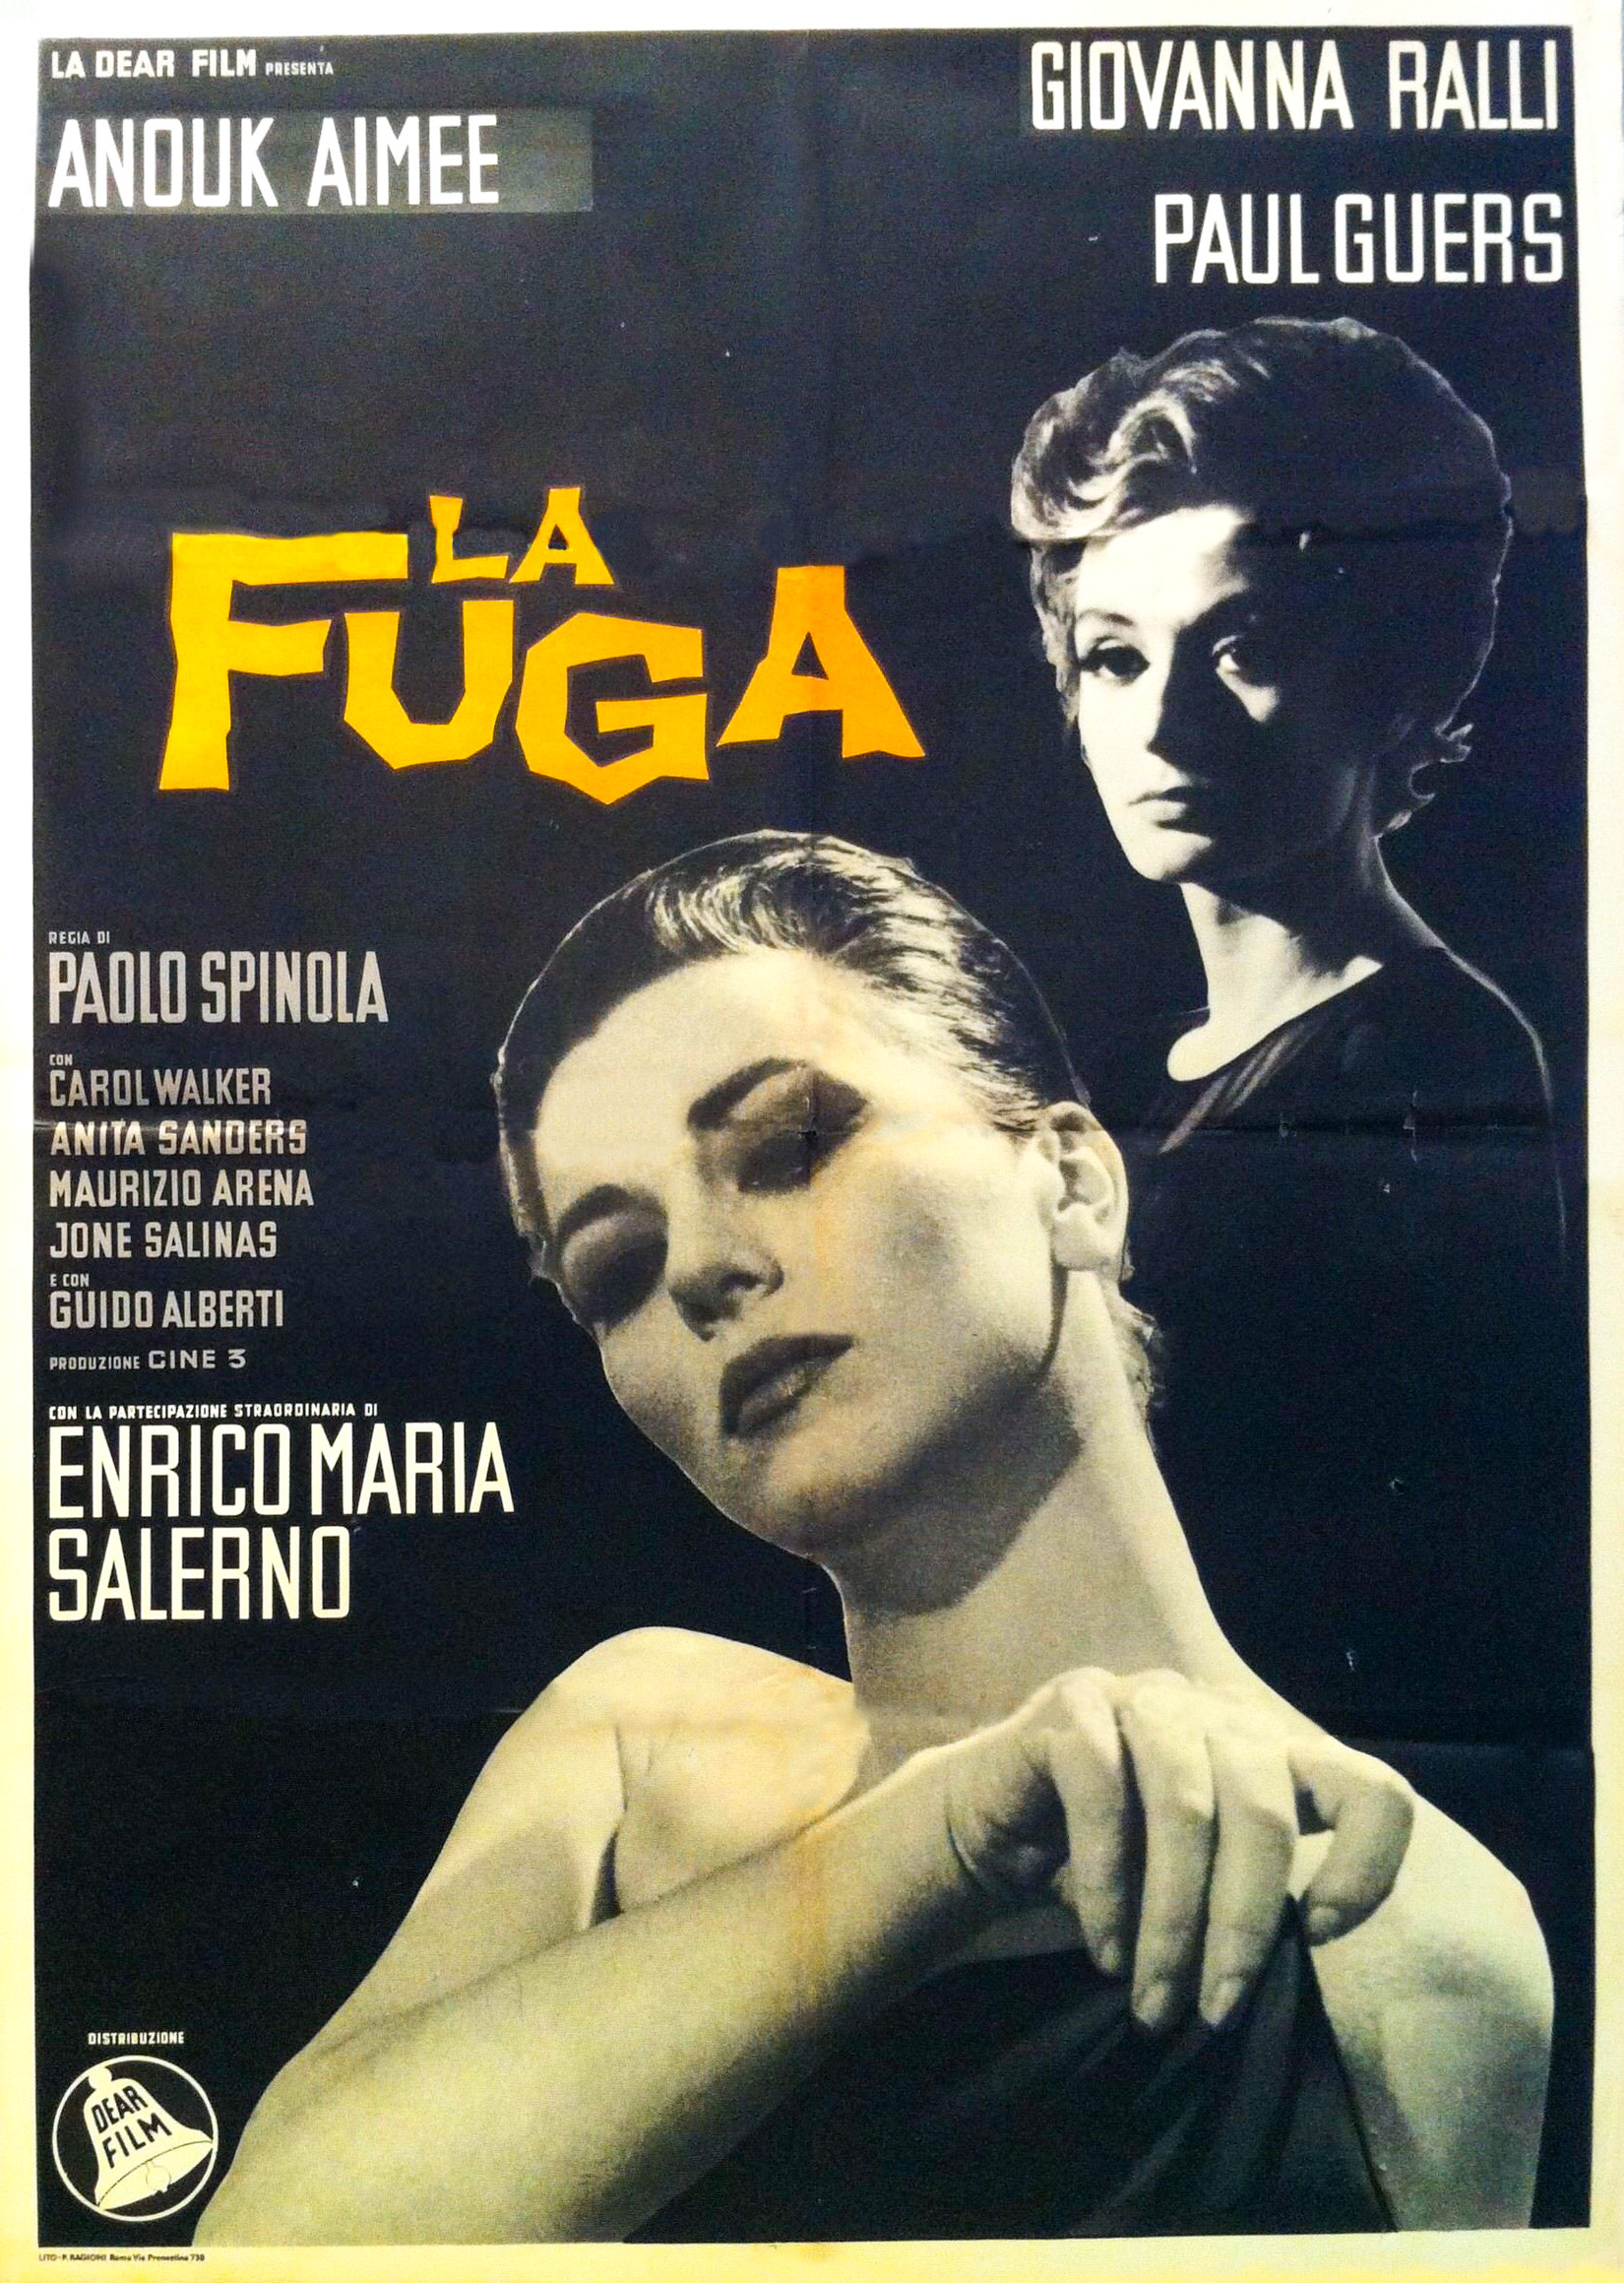 La fuga (1965) with English Subtitles on DVD on DVD